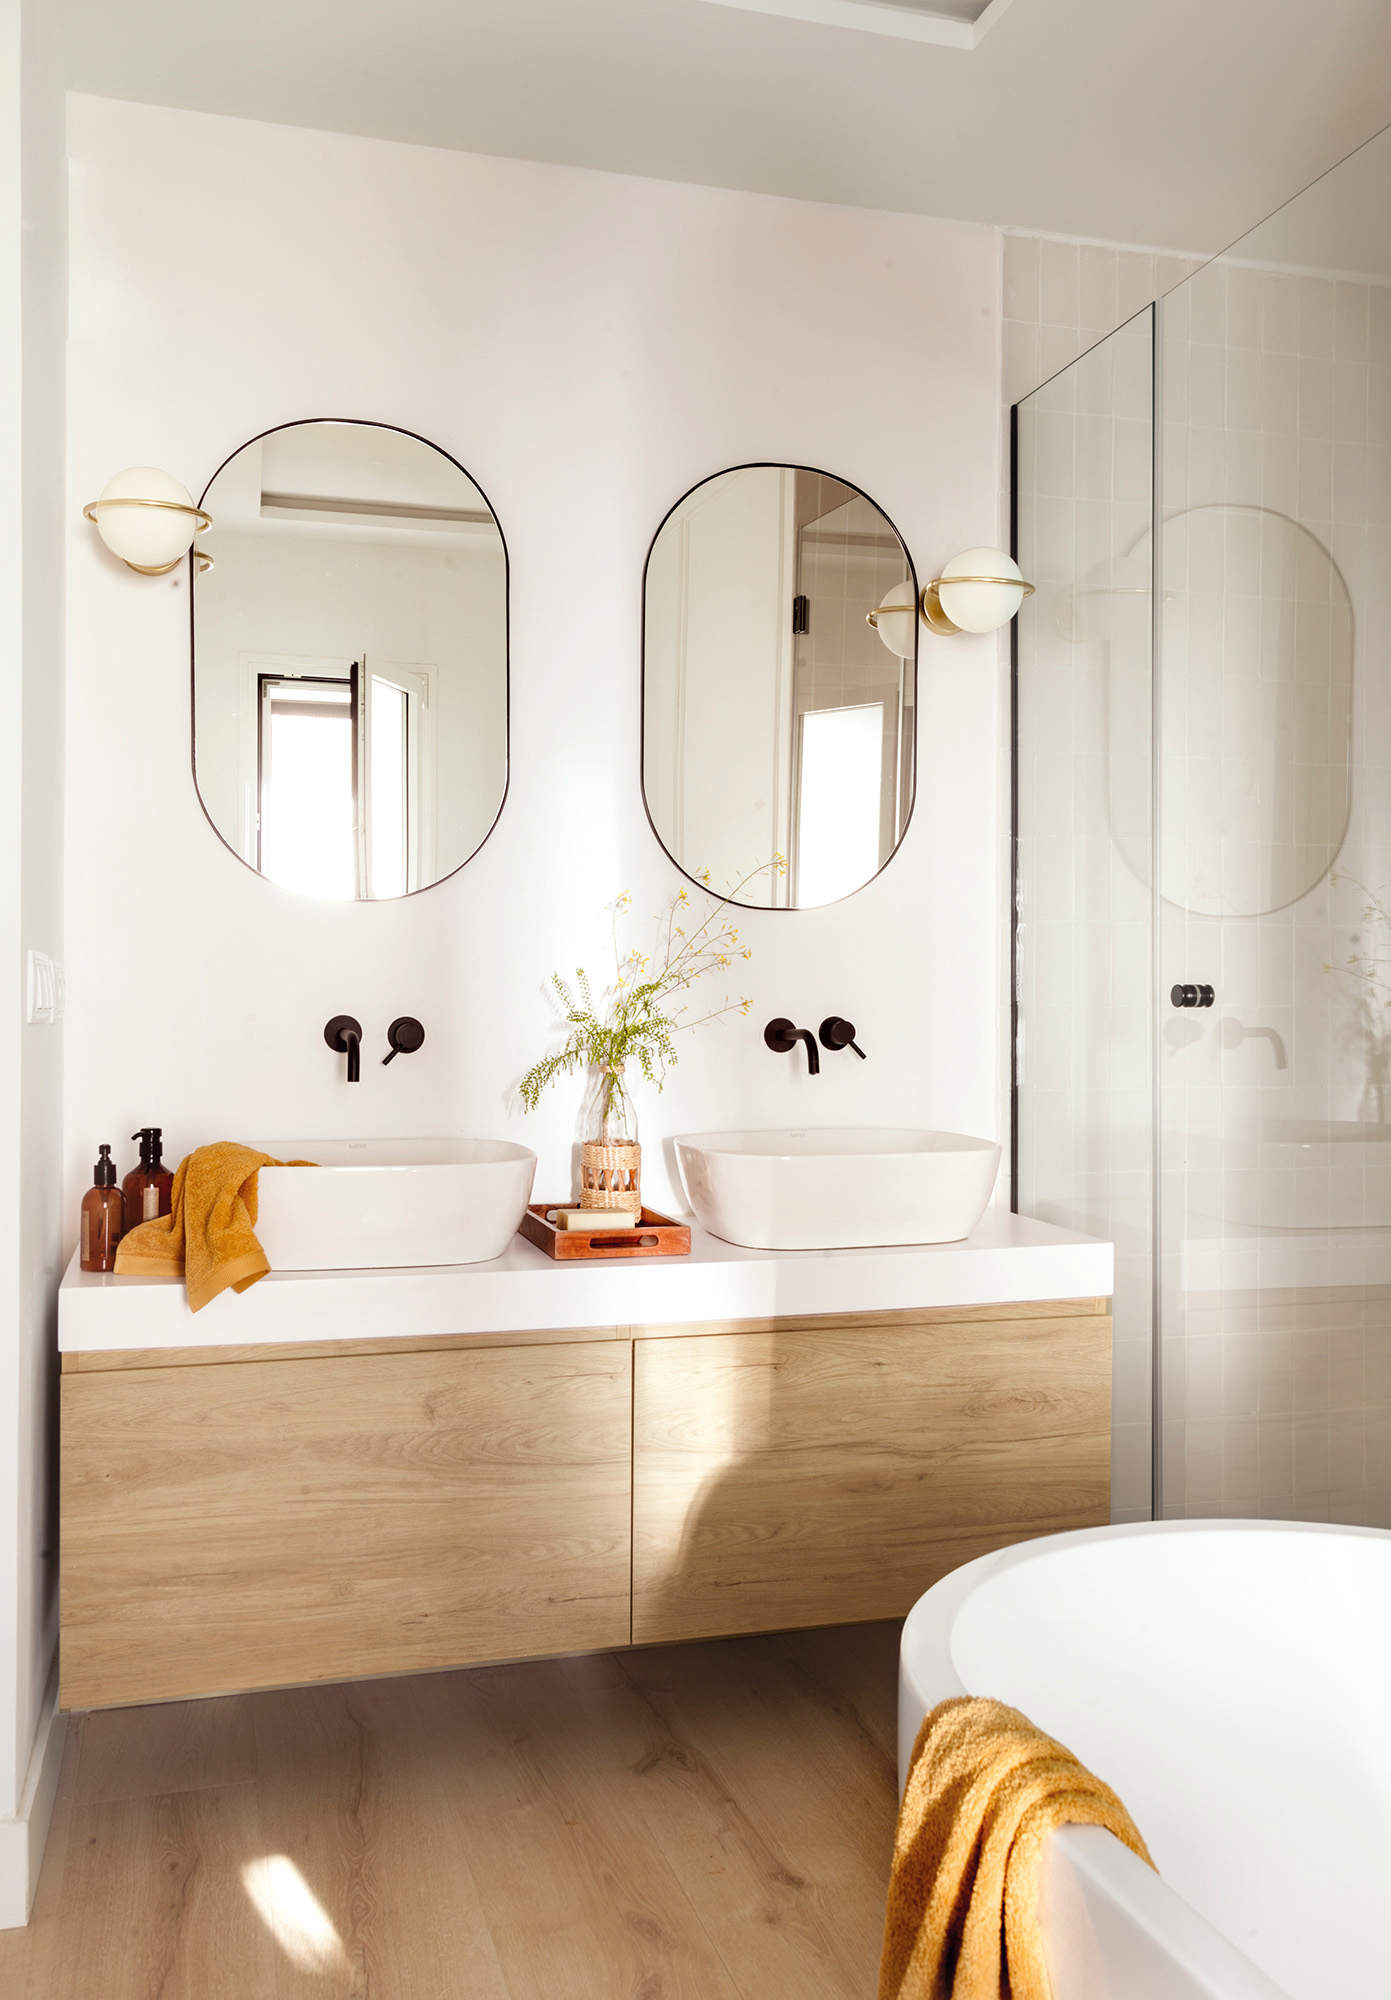 Baño pequeño con bañera, mueble volado, lavabos exentos, grifería empotrada, espejos ovalados y apliques globo.